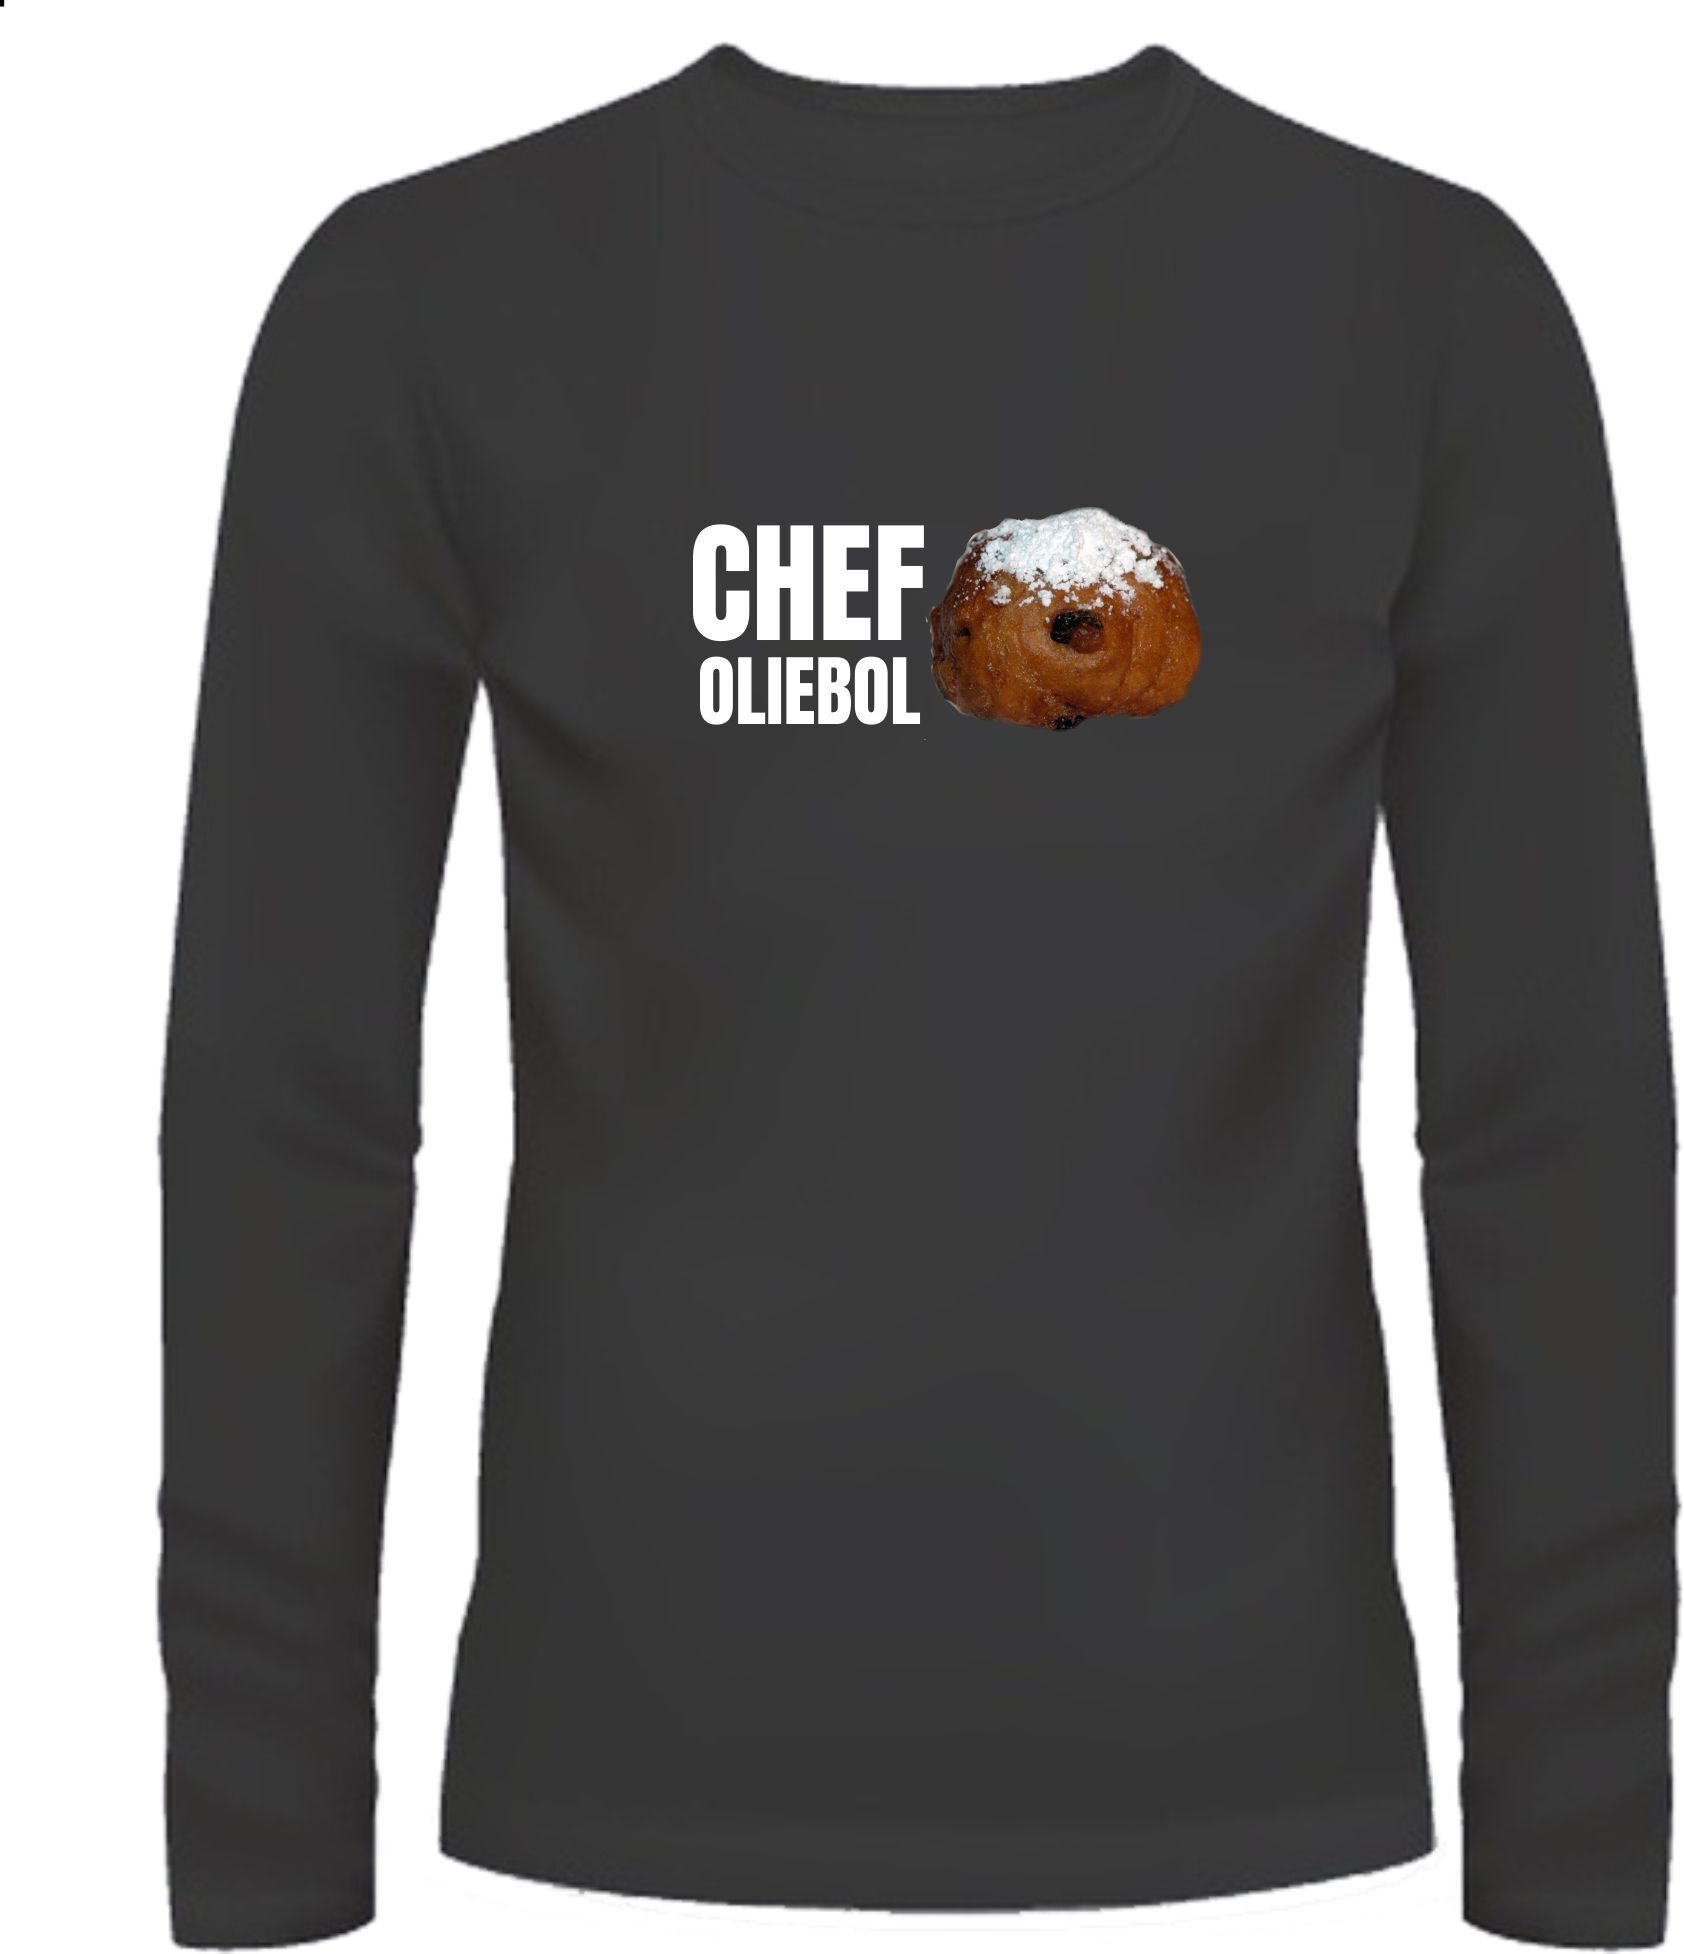 Grappig oud en nieuw T-shirt voor Chef oliebol